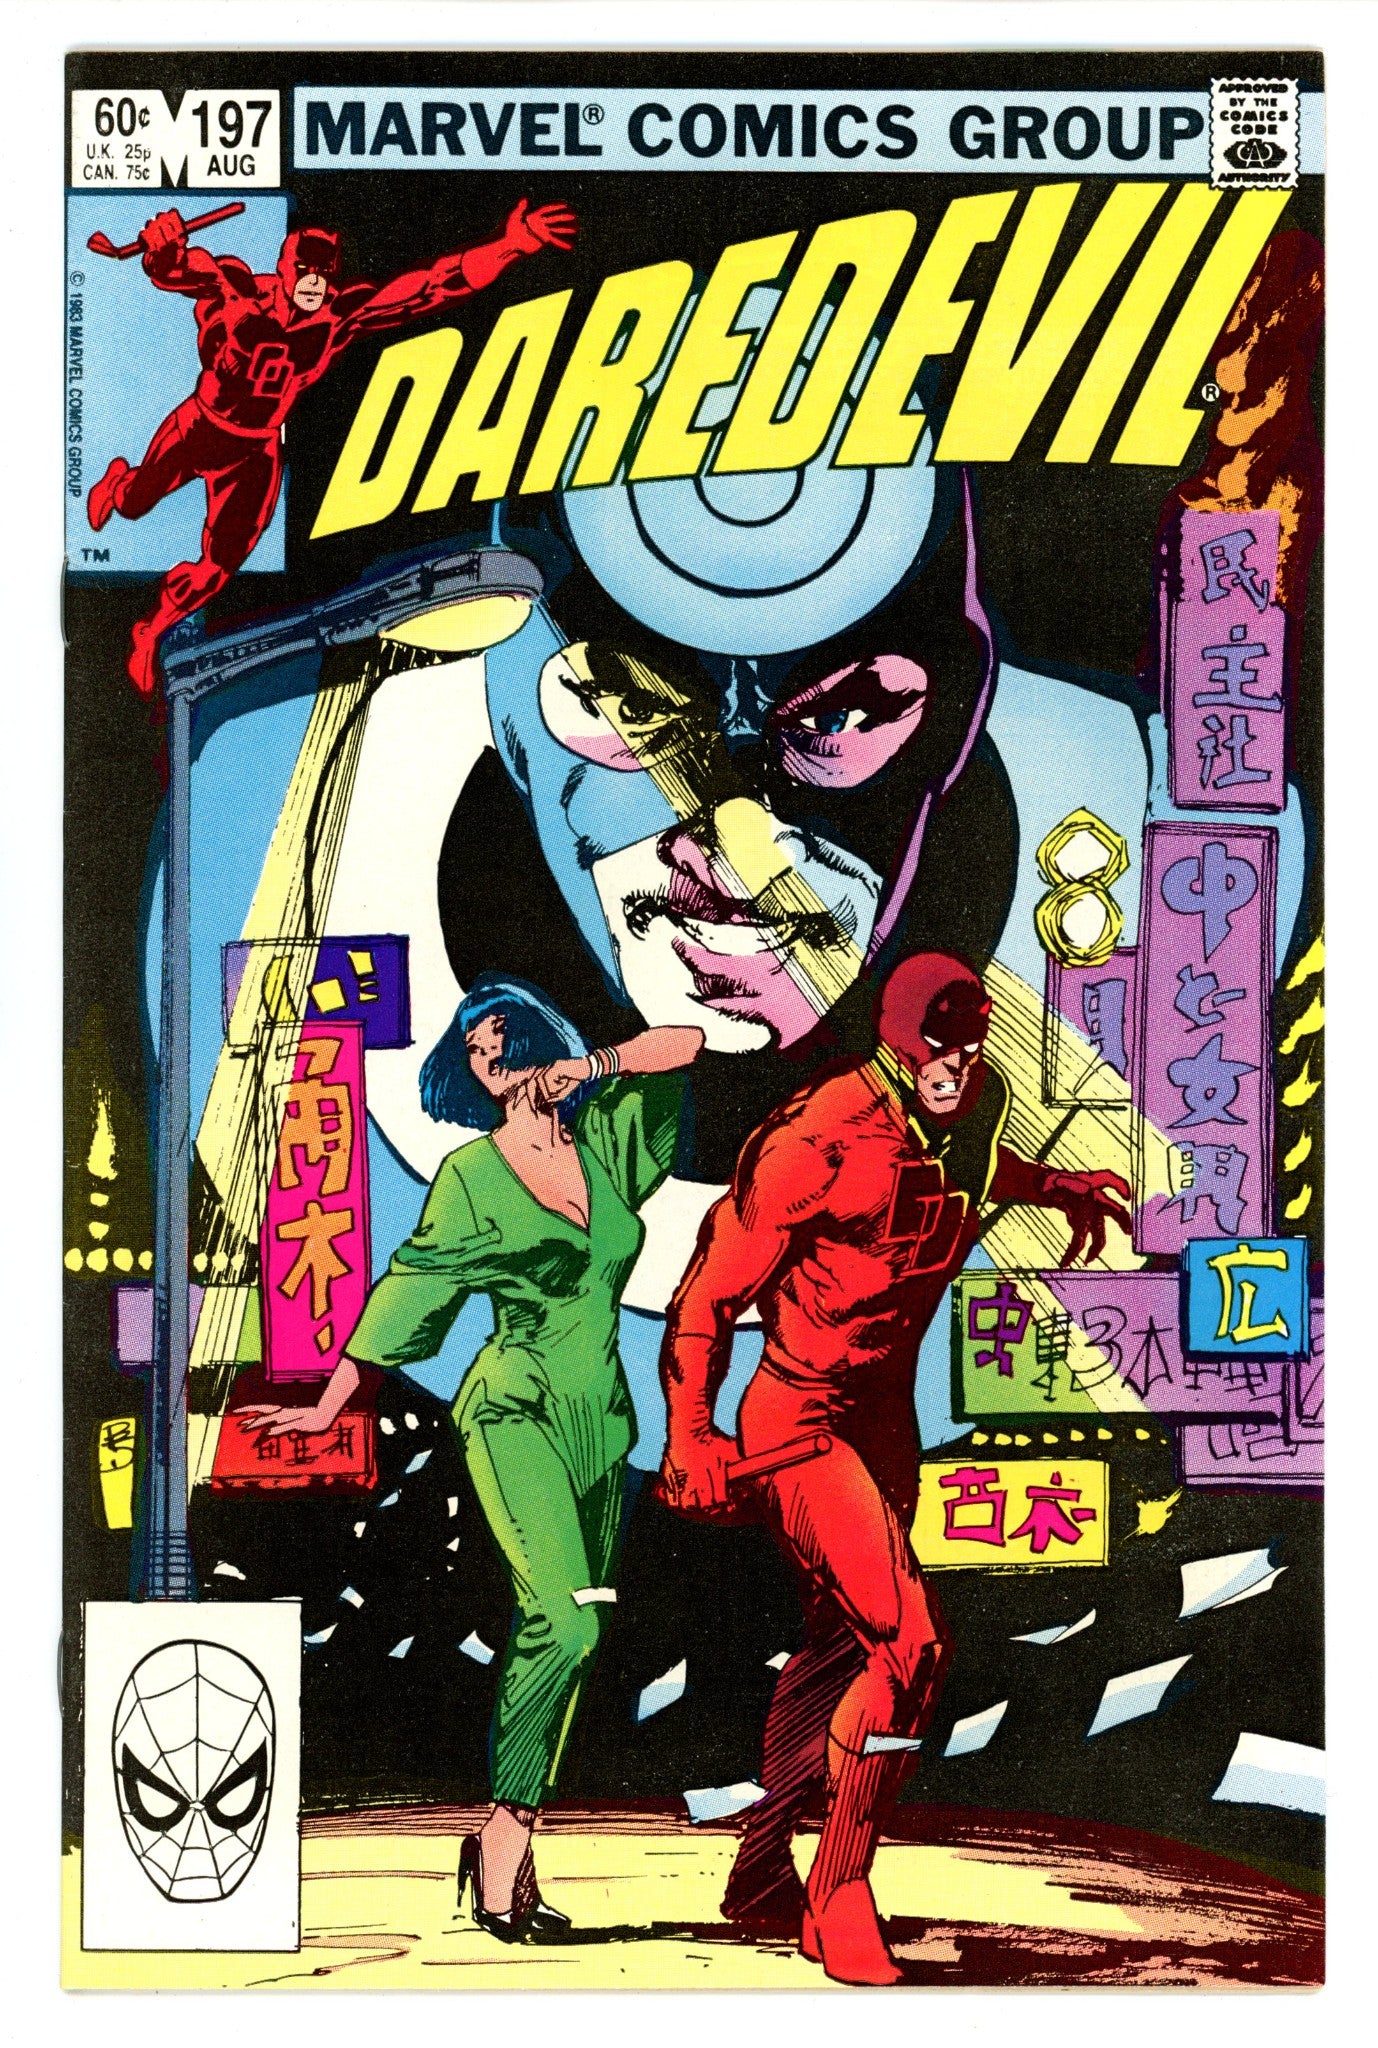 Daredevil Vol 1 197 VF (8.0) (1983) 